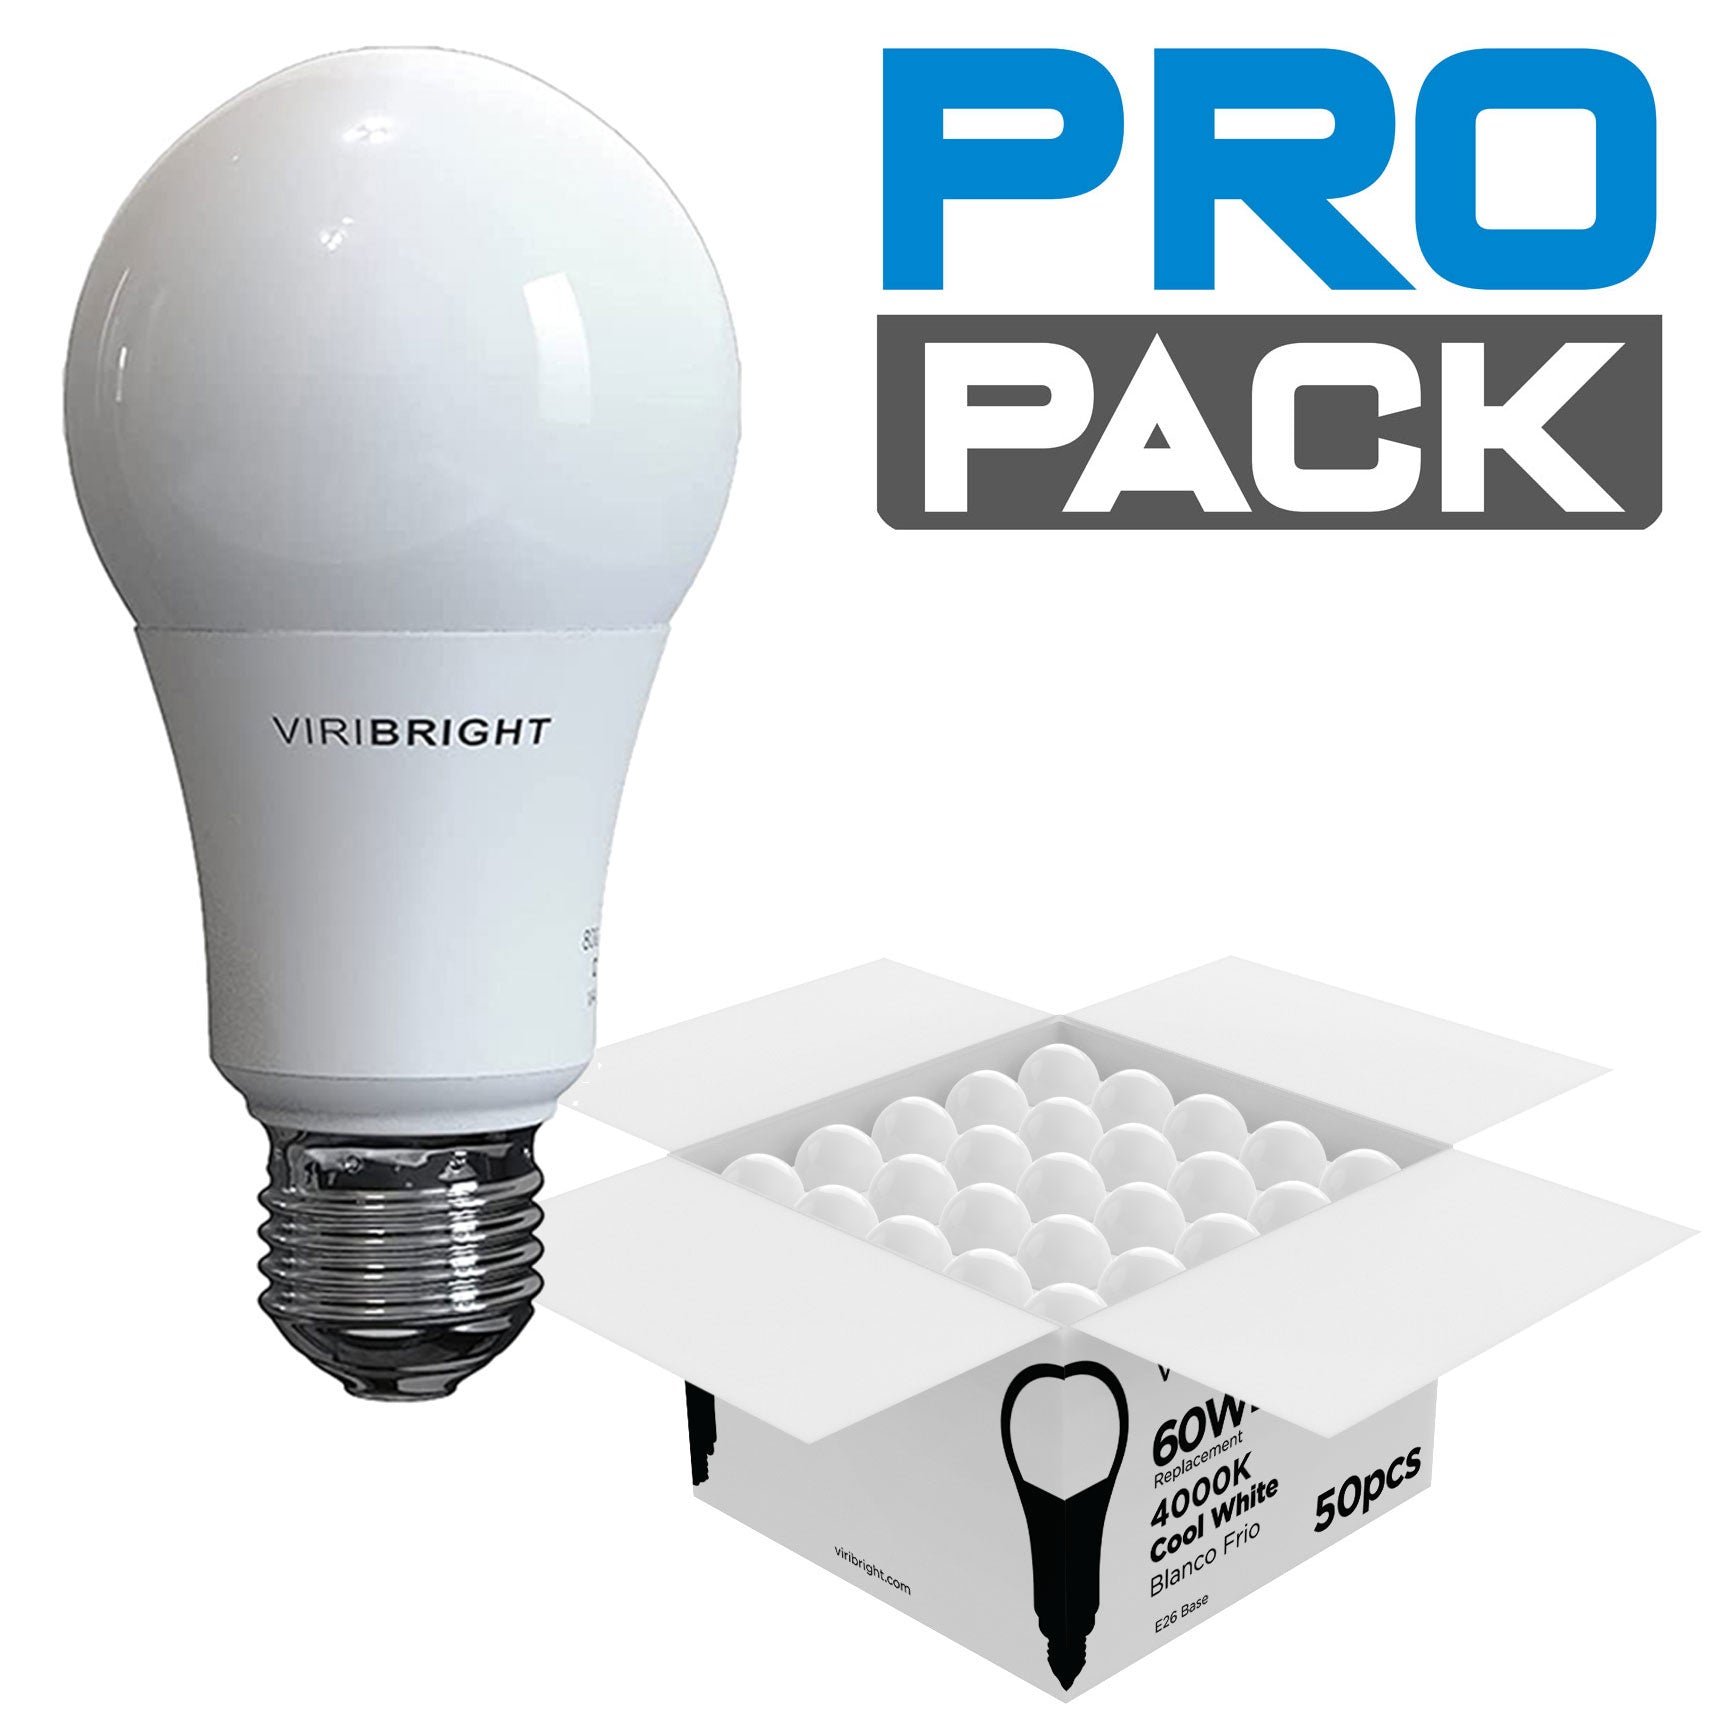 Viribright Contractor Bulk Professional light bulb packs A19 E26 4000K Cool White